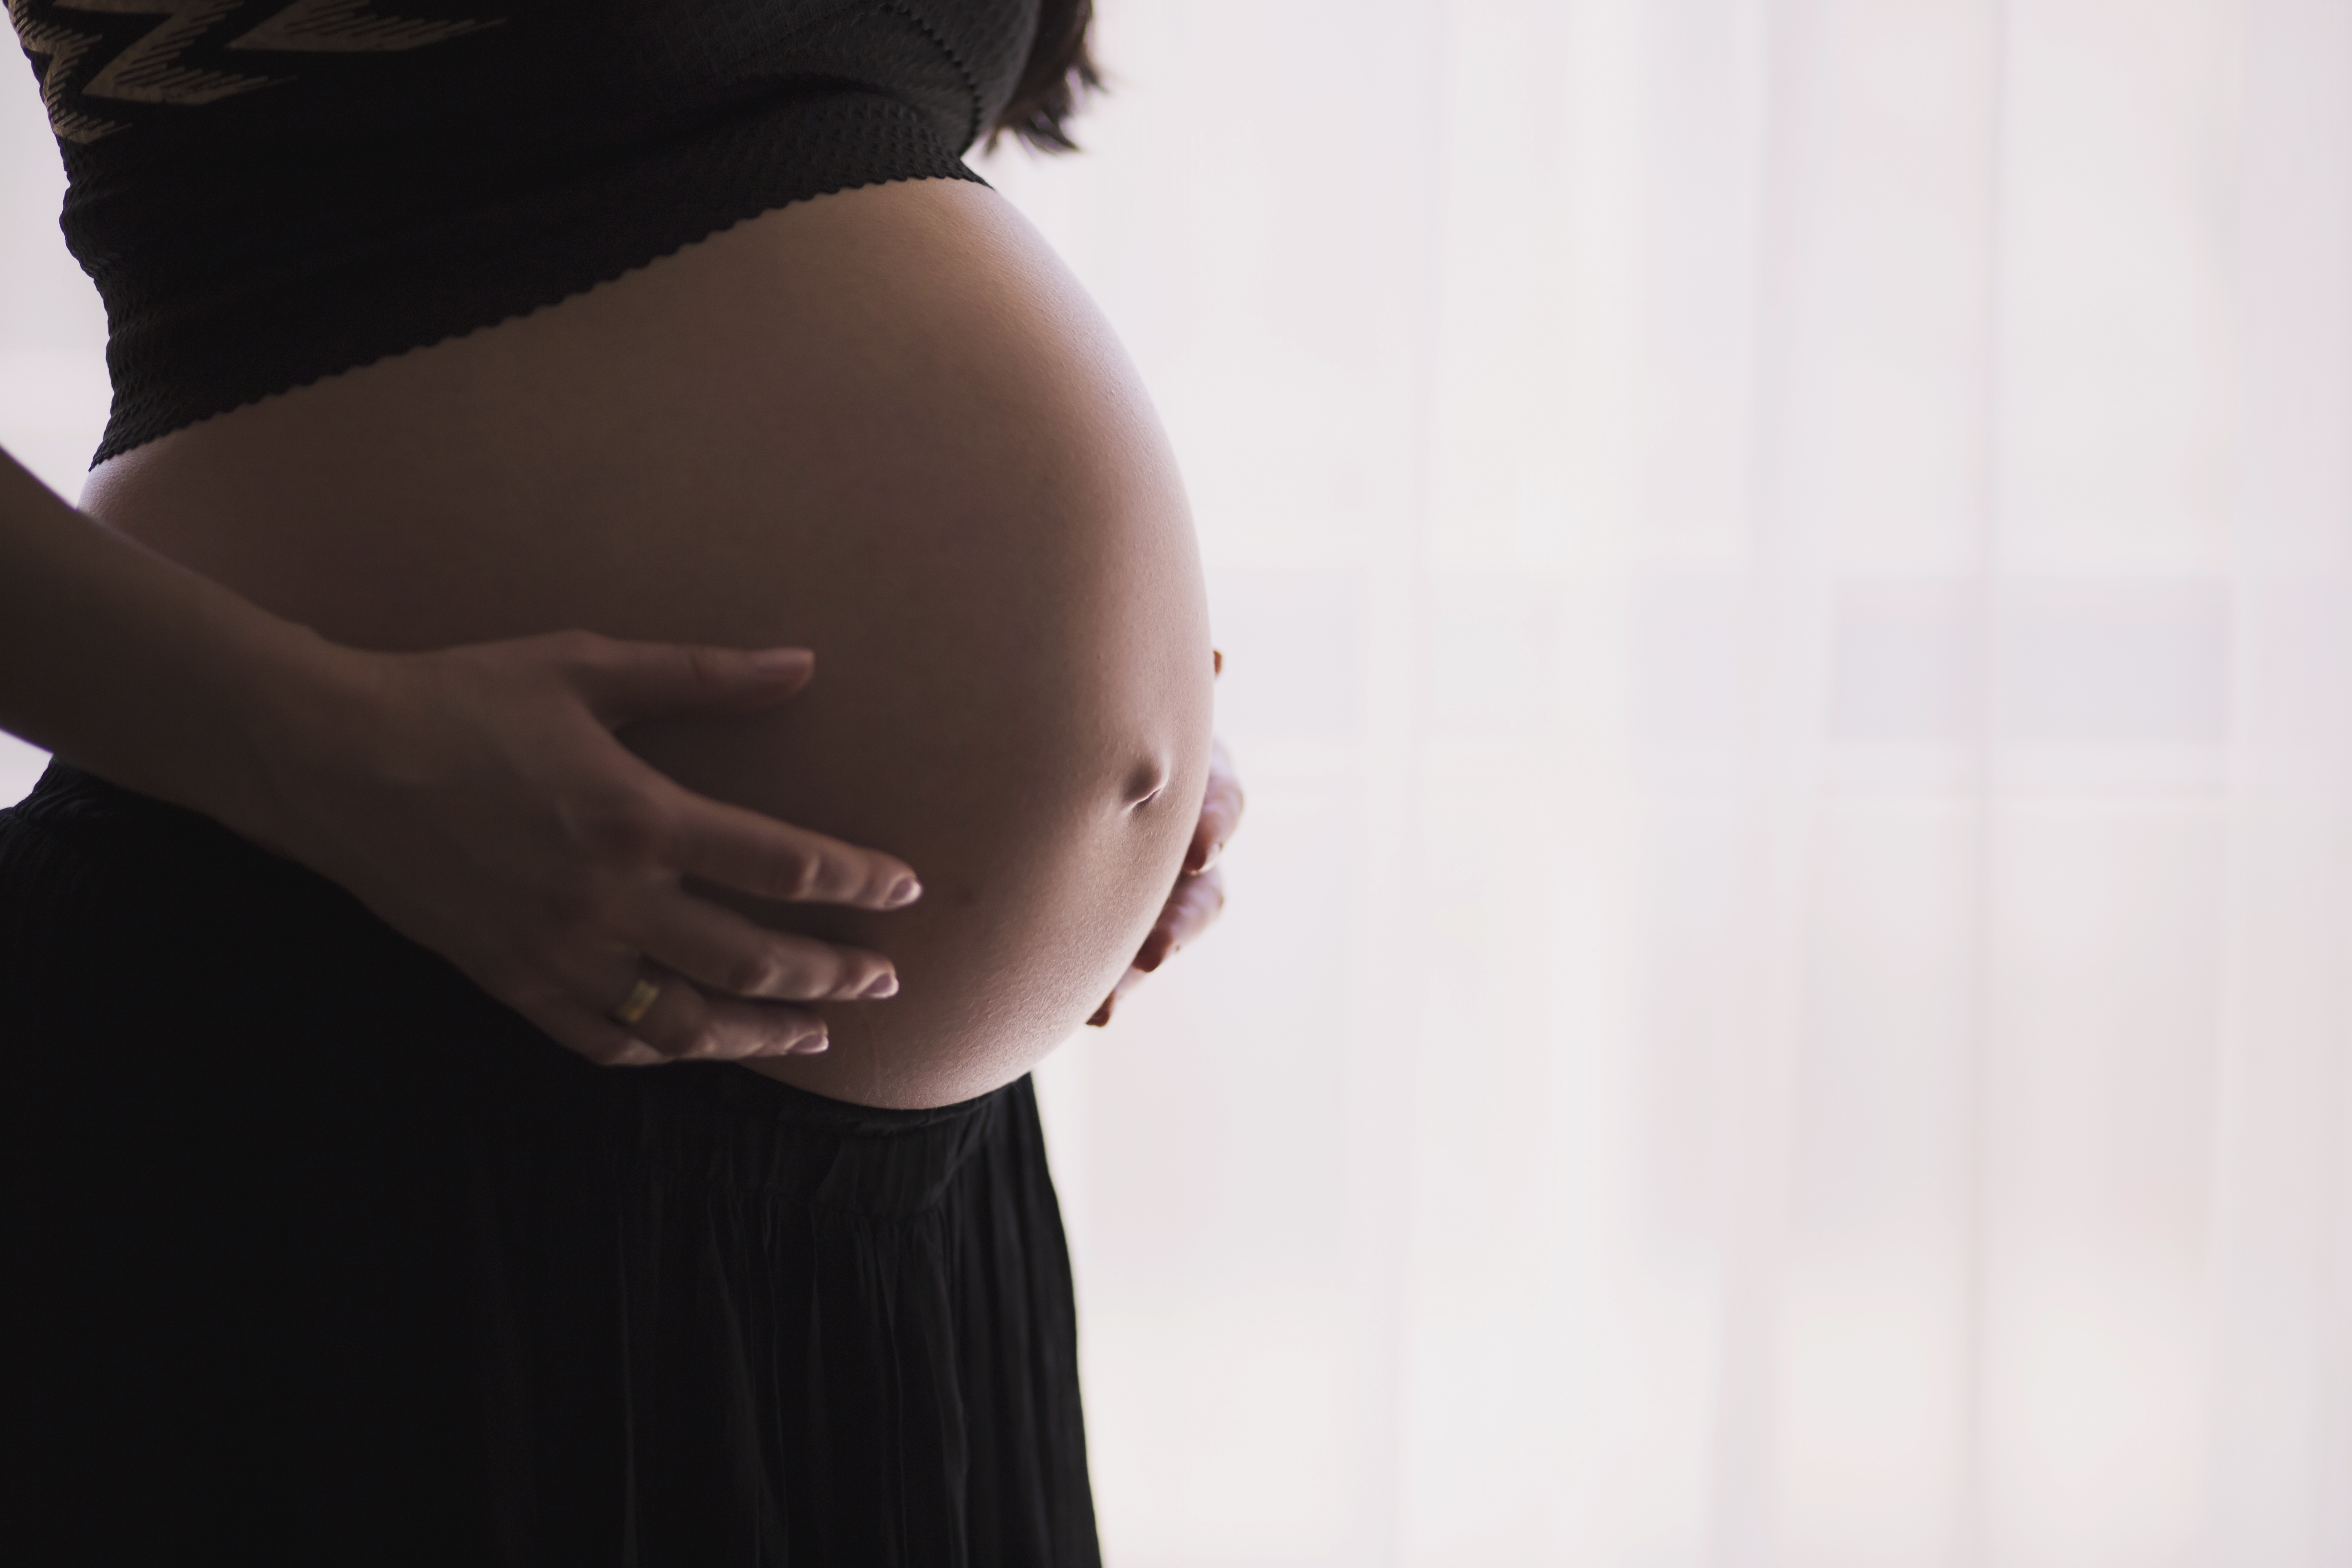 Las madres de bebés diagnosticados pequeños para la edad gestacional durante el embarazo muestr...